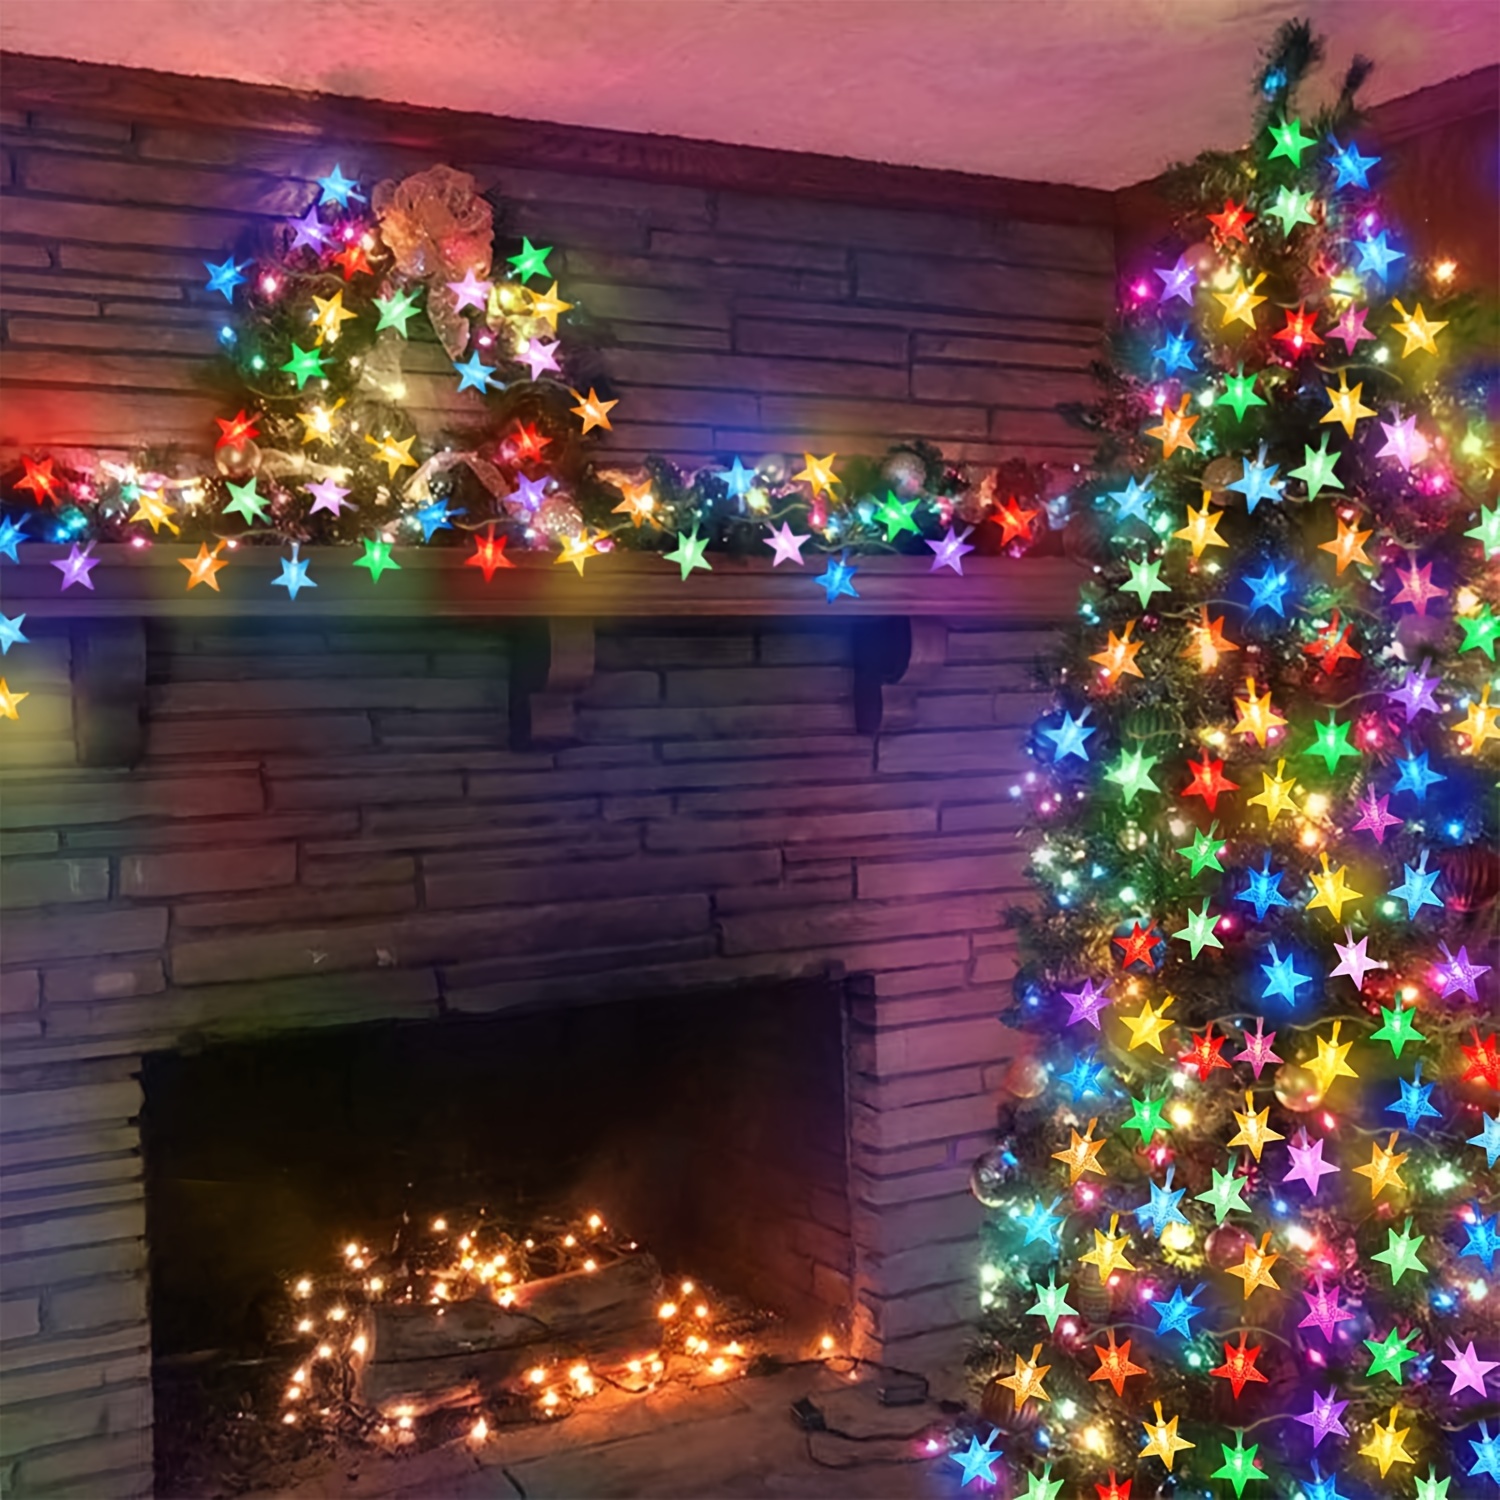 Guirlande Lumineuse Sphérique, 6M 40 LED Petites Boules, Alimenté batterie  Eclairage Décoration Intérieur et Extérieur, pour  Maison/Chambre/Jardin/Balcon/Fête/Noël et Mariage (Multicolore)